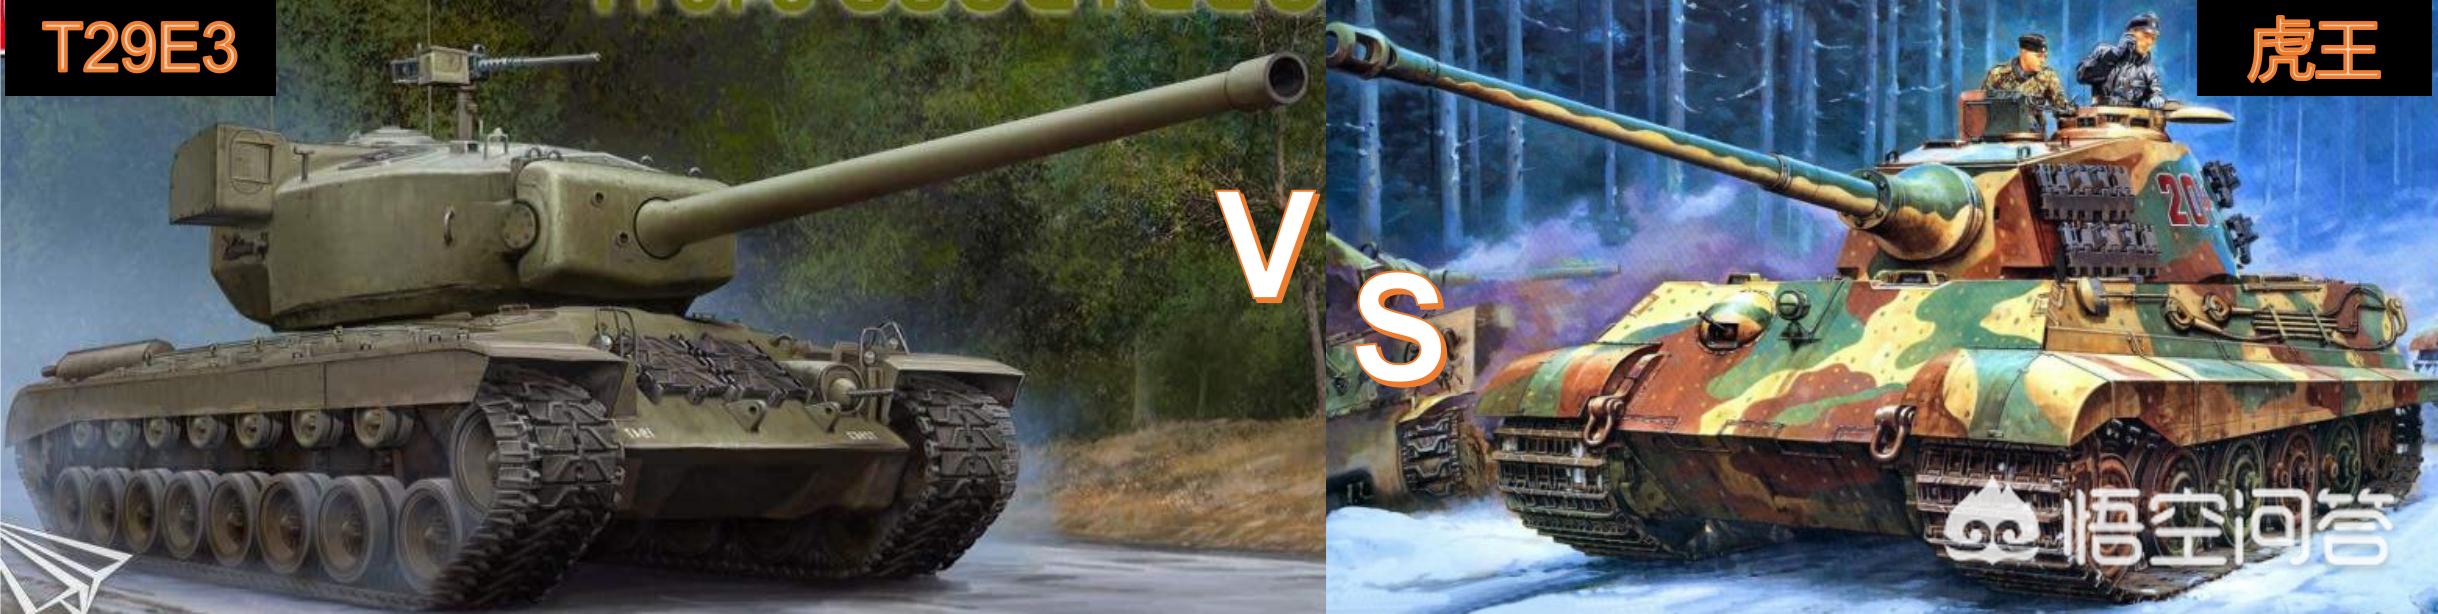 太平洋游戏网下载:如果虎王和T29这两辆坦克在战